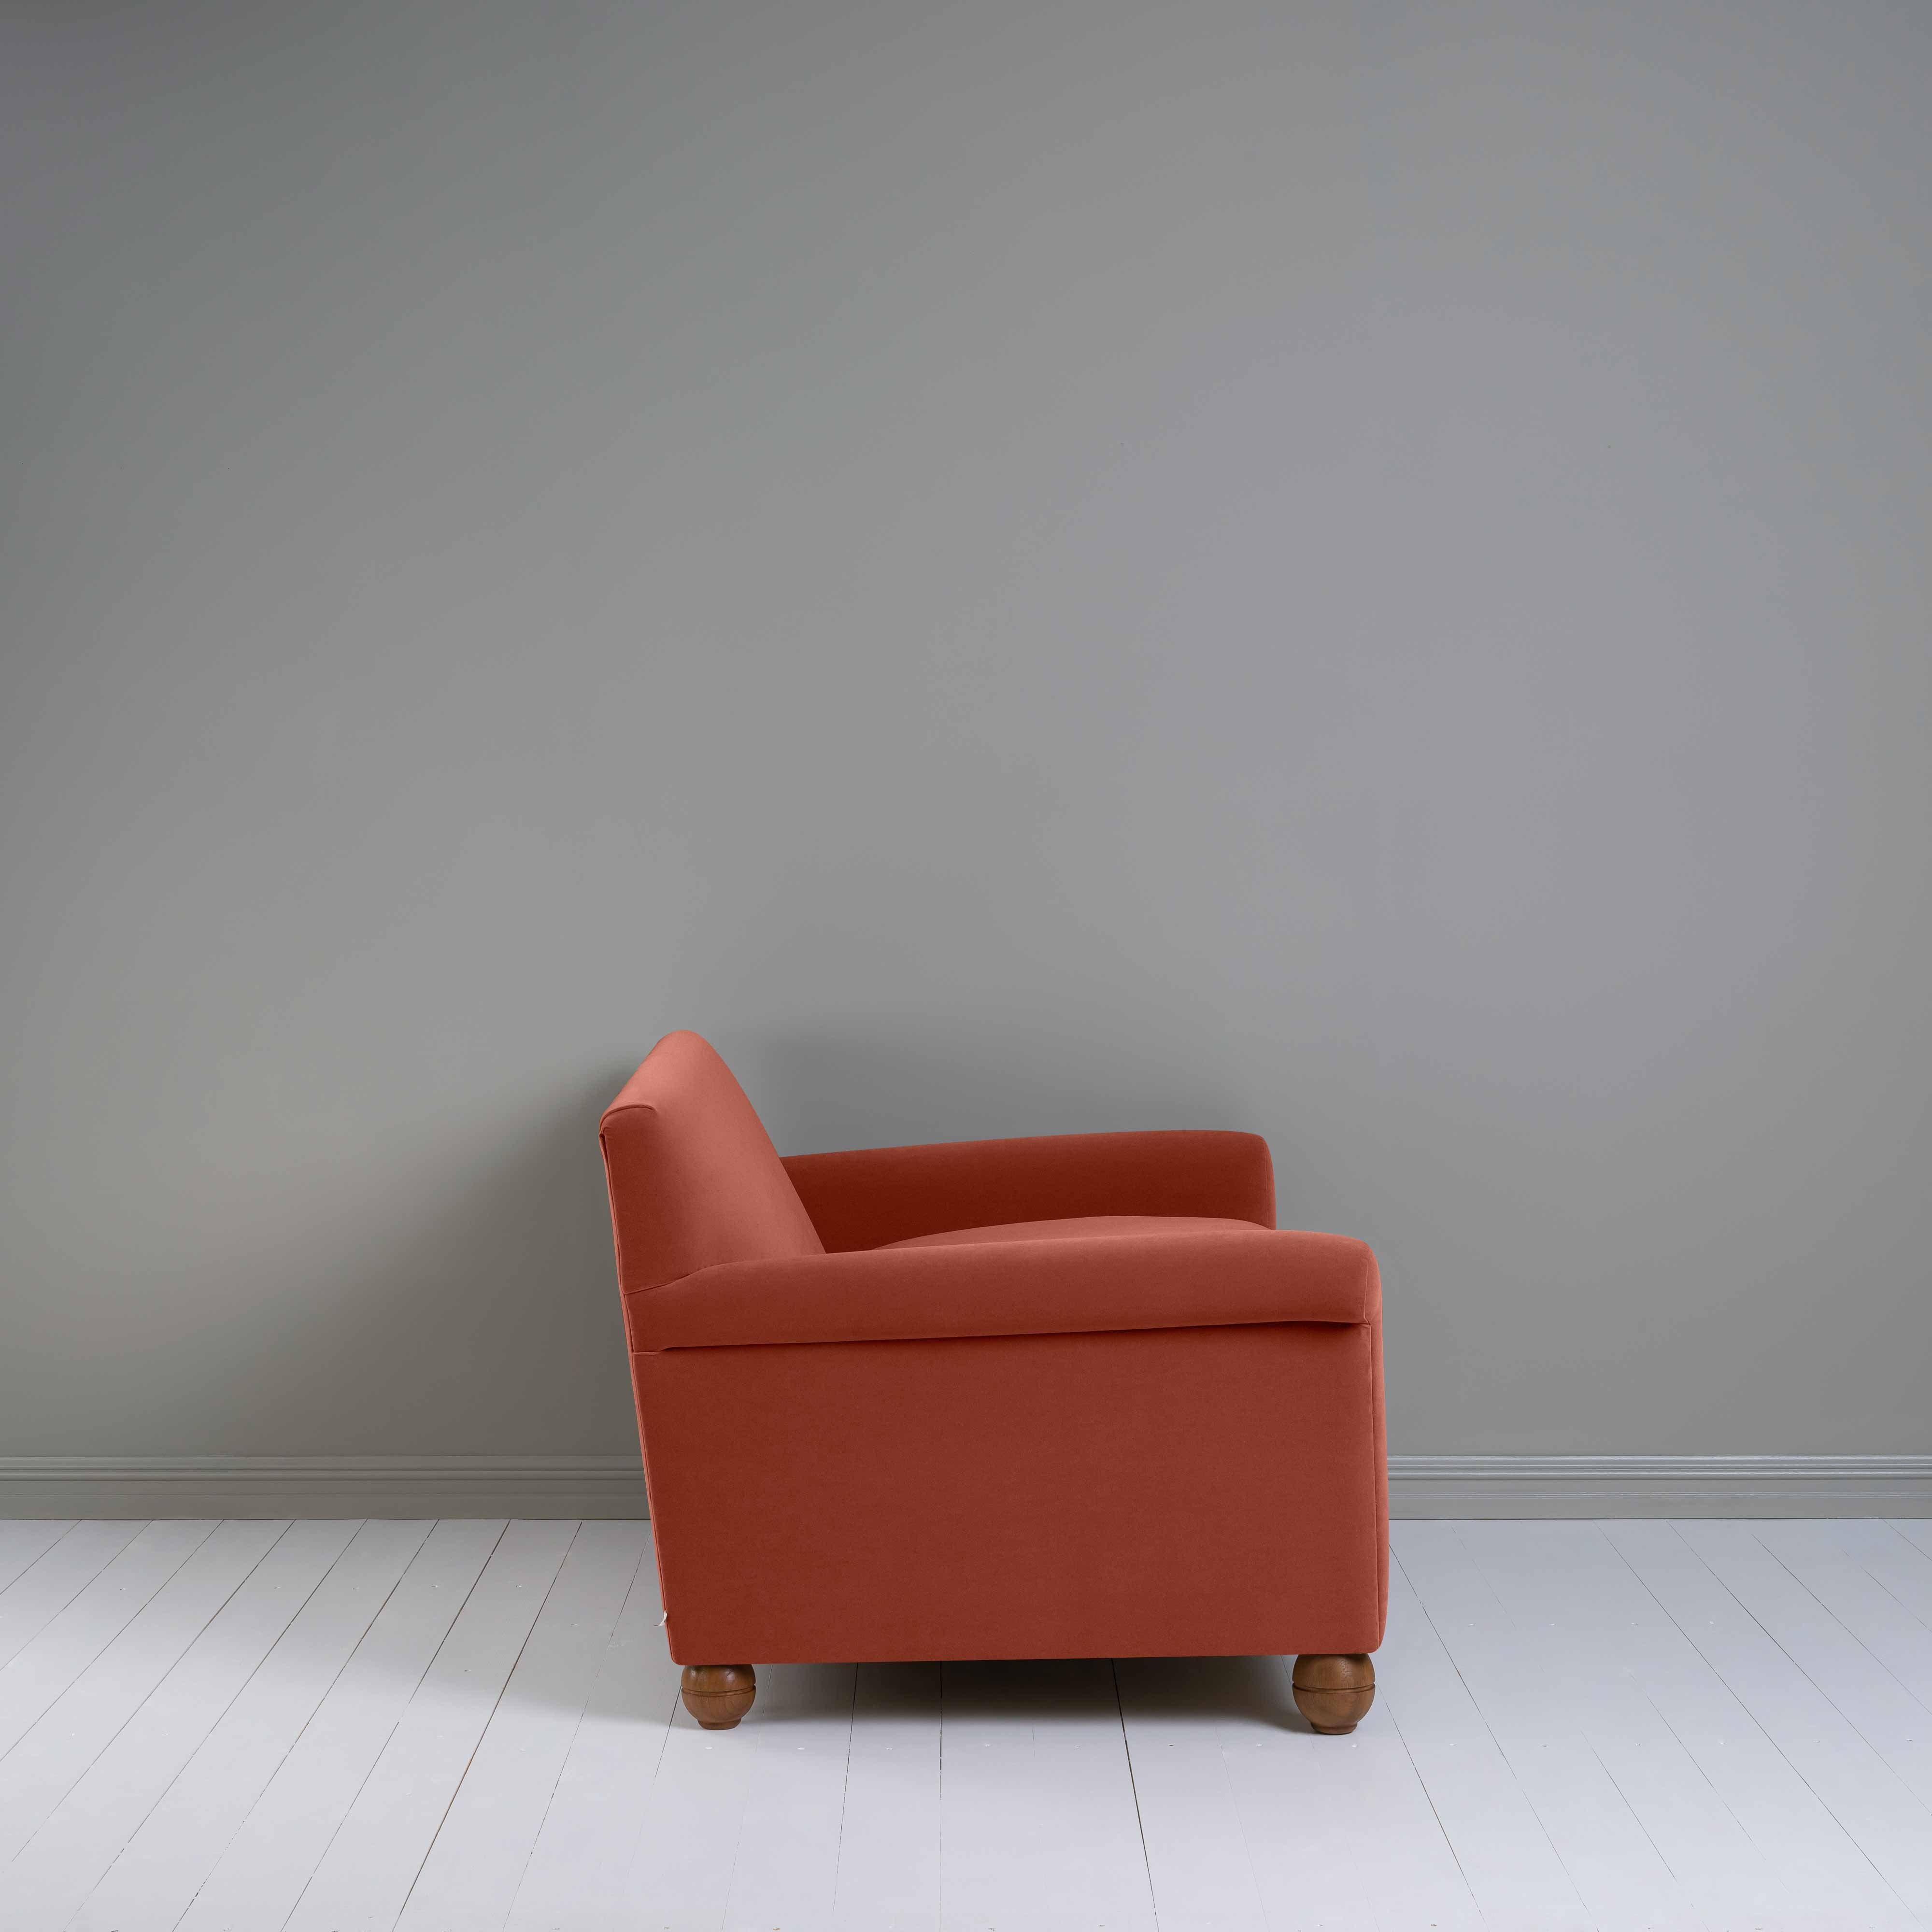  Idler 2 Seater Sofa in Intelligent Velvet Sienna 